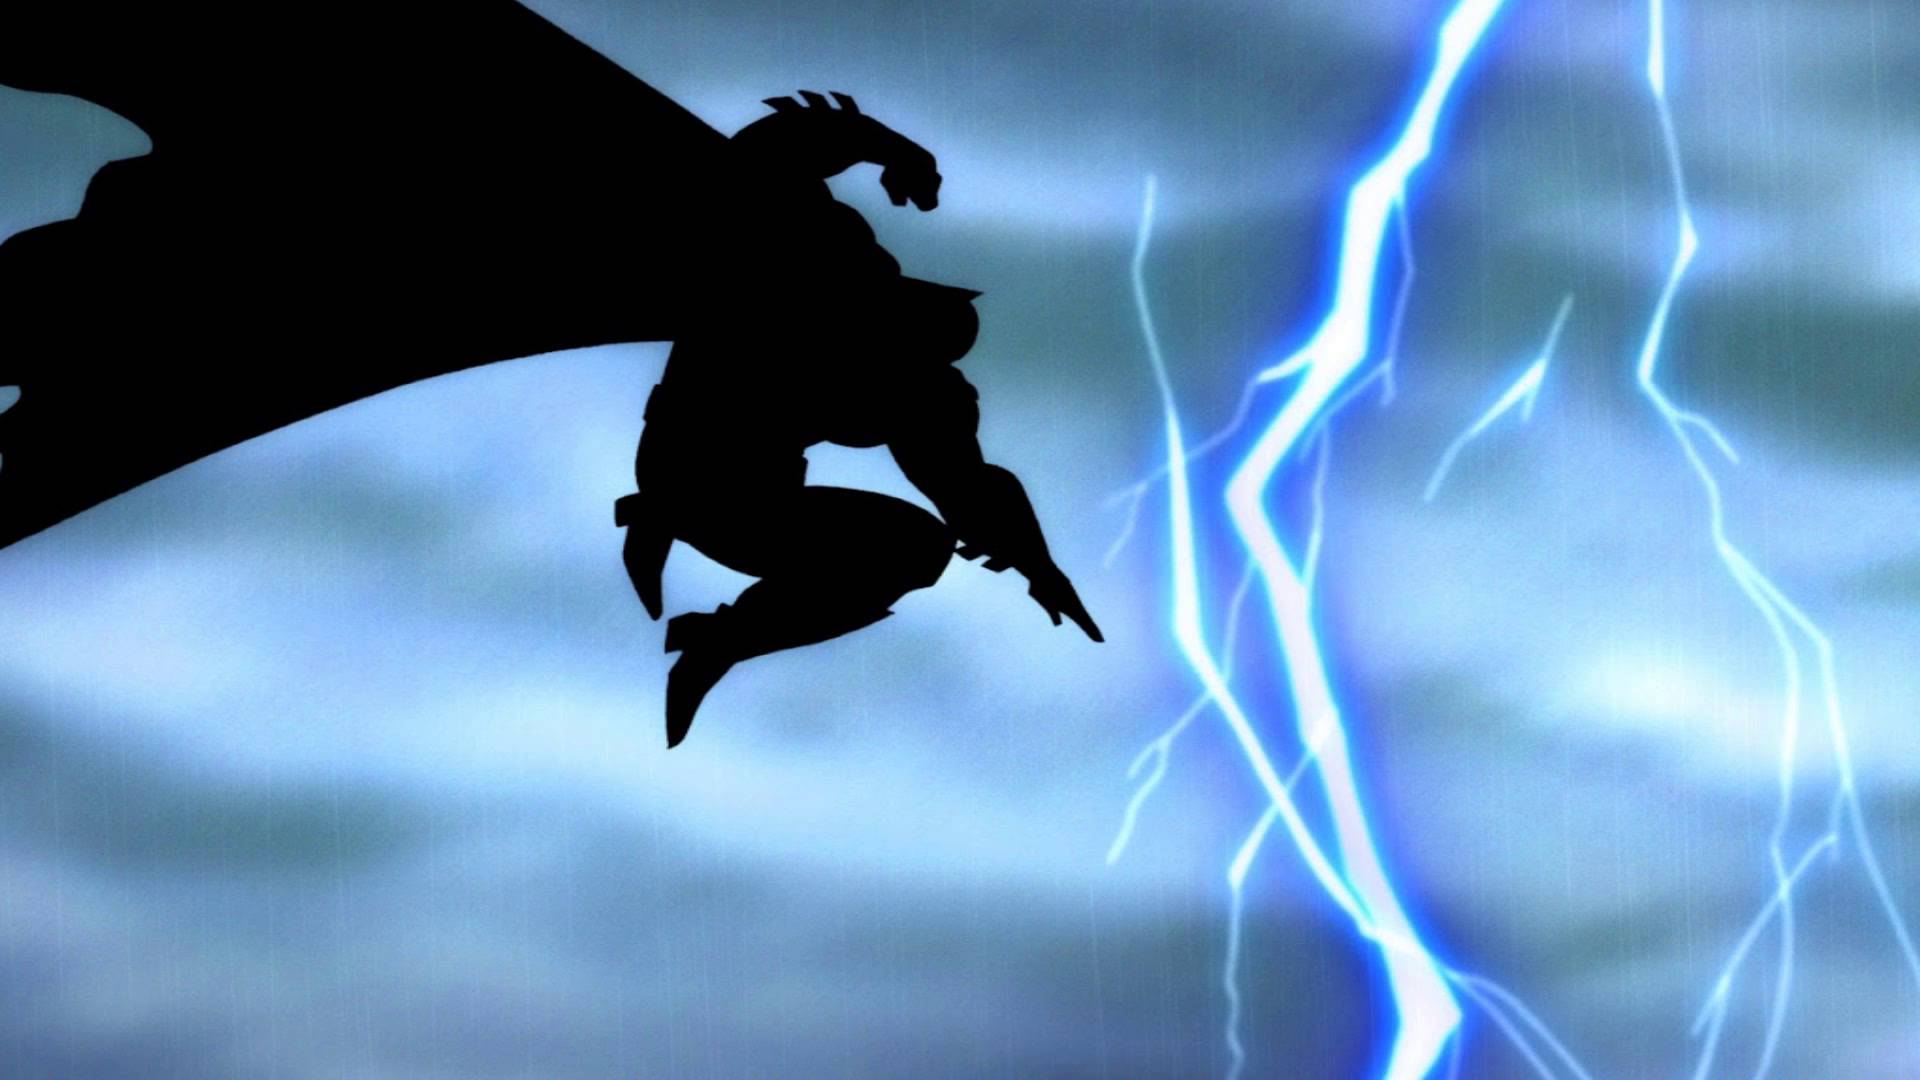 Скачать обои Бэтмен: Возвращение Тёмного Рыцаря на телефон бесплатно